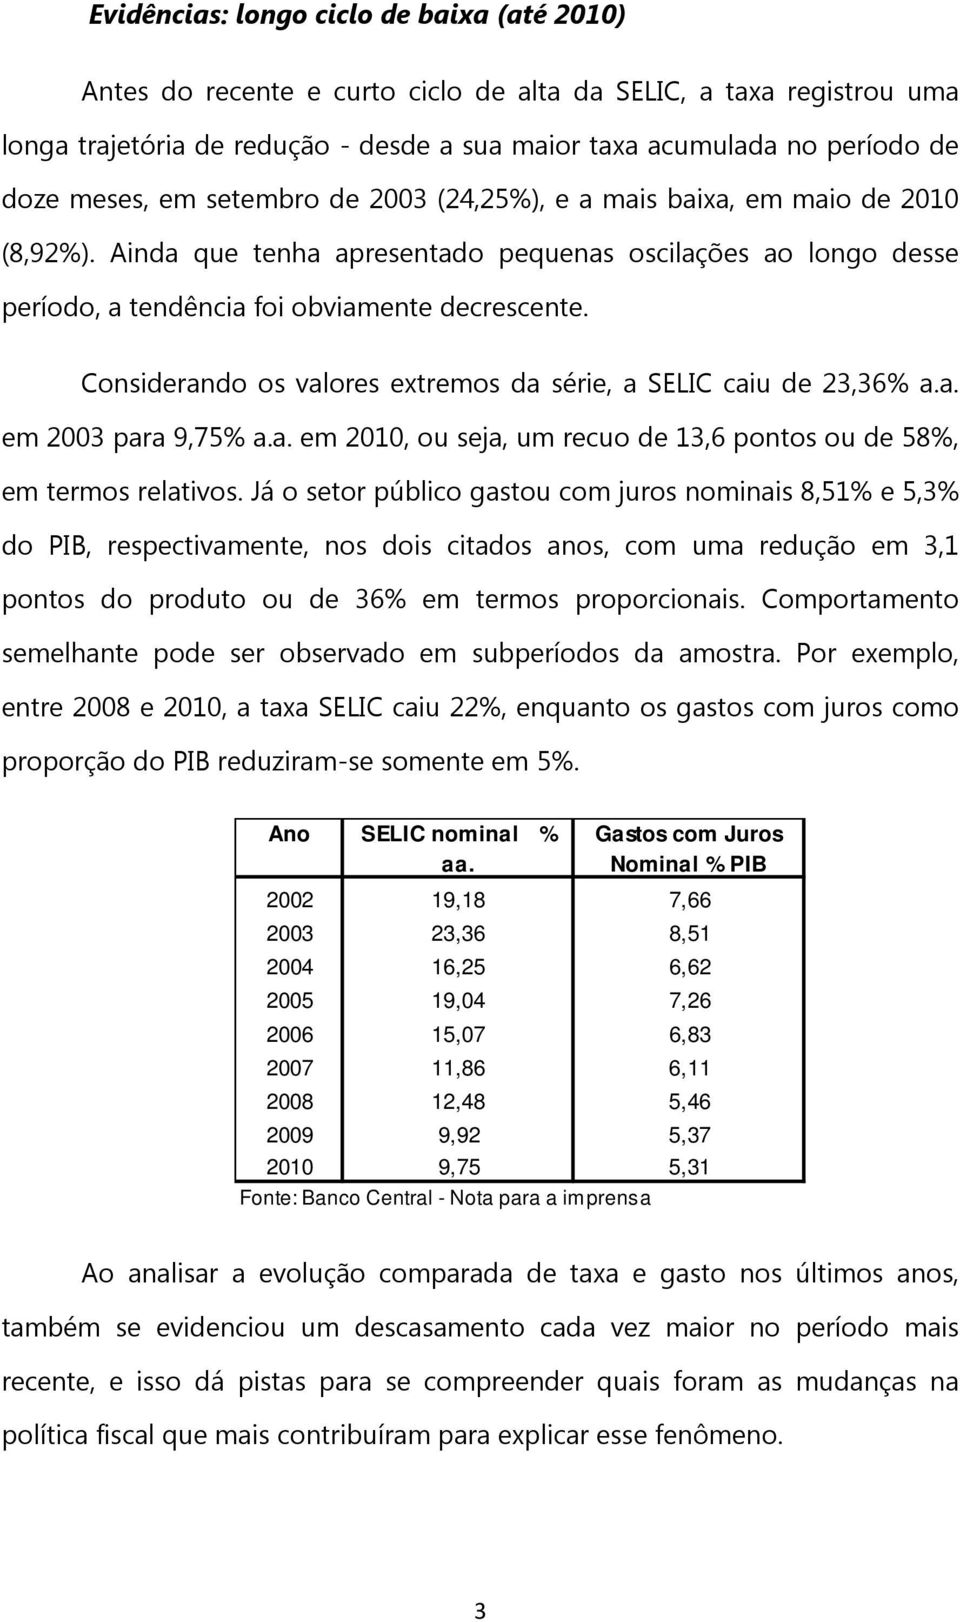 Considerando os valores extremos da série, a SELIC caiu de 23,36% a.a. em 2003 para 9,75% a.a. em 2010, ou seja, um recuo de 13,6 pontos ou de 58%, em termos relativos.